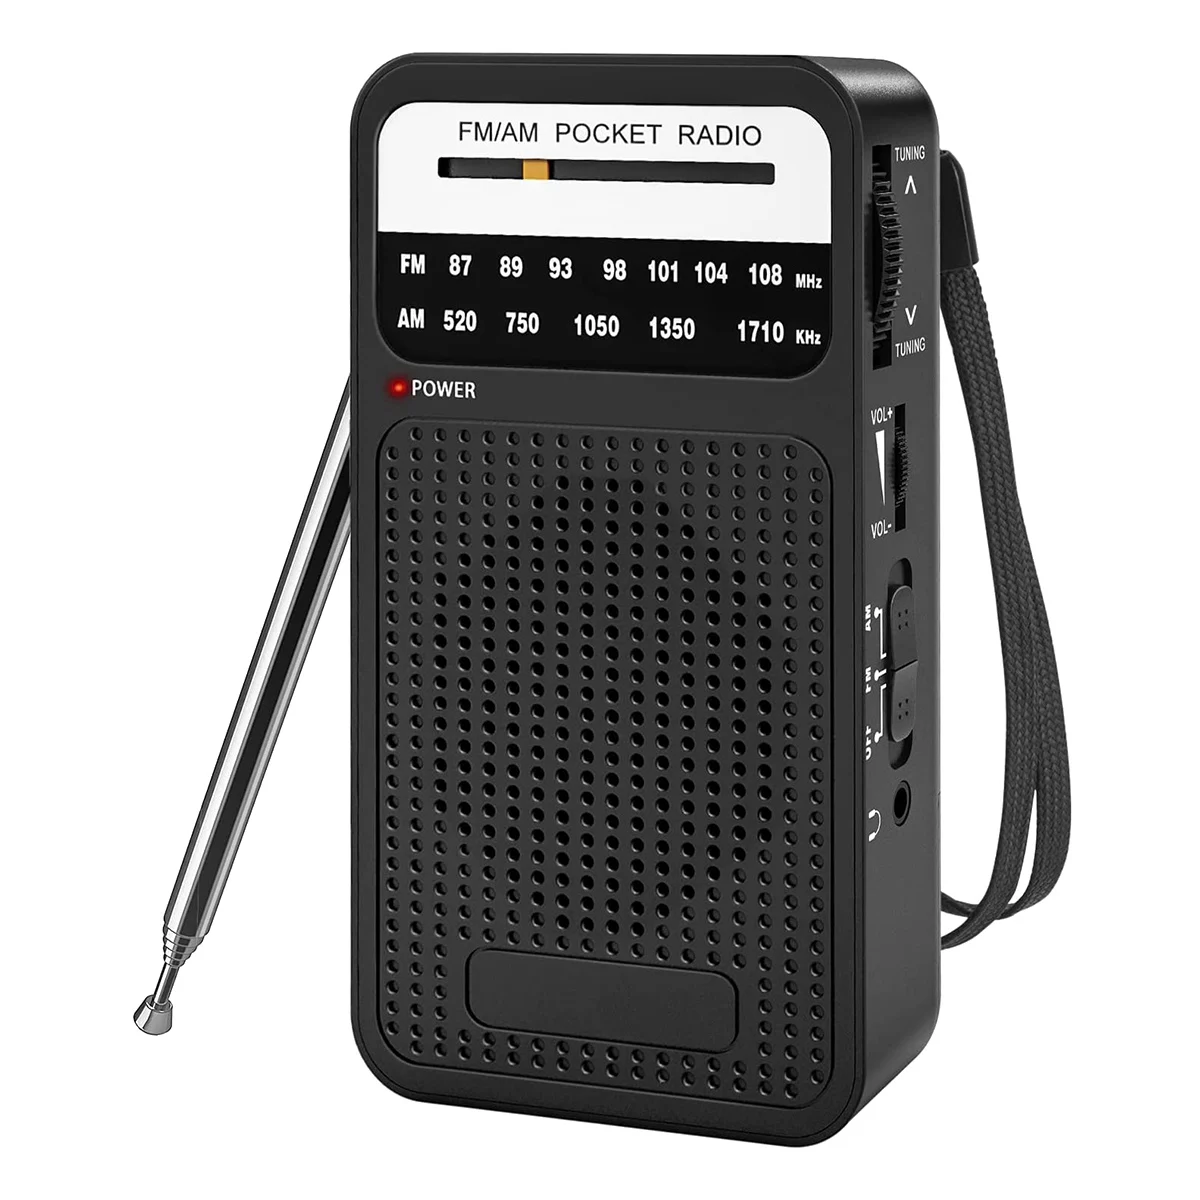 

AM FM карманное радио, транзисторное радио с громкоговорителем, разъем для наушников, портативное радио для использования в помещении, на улице